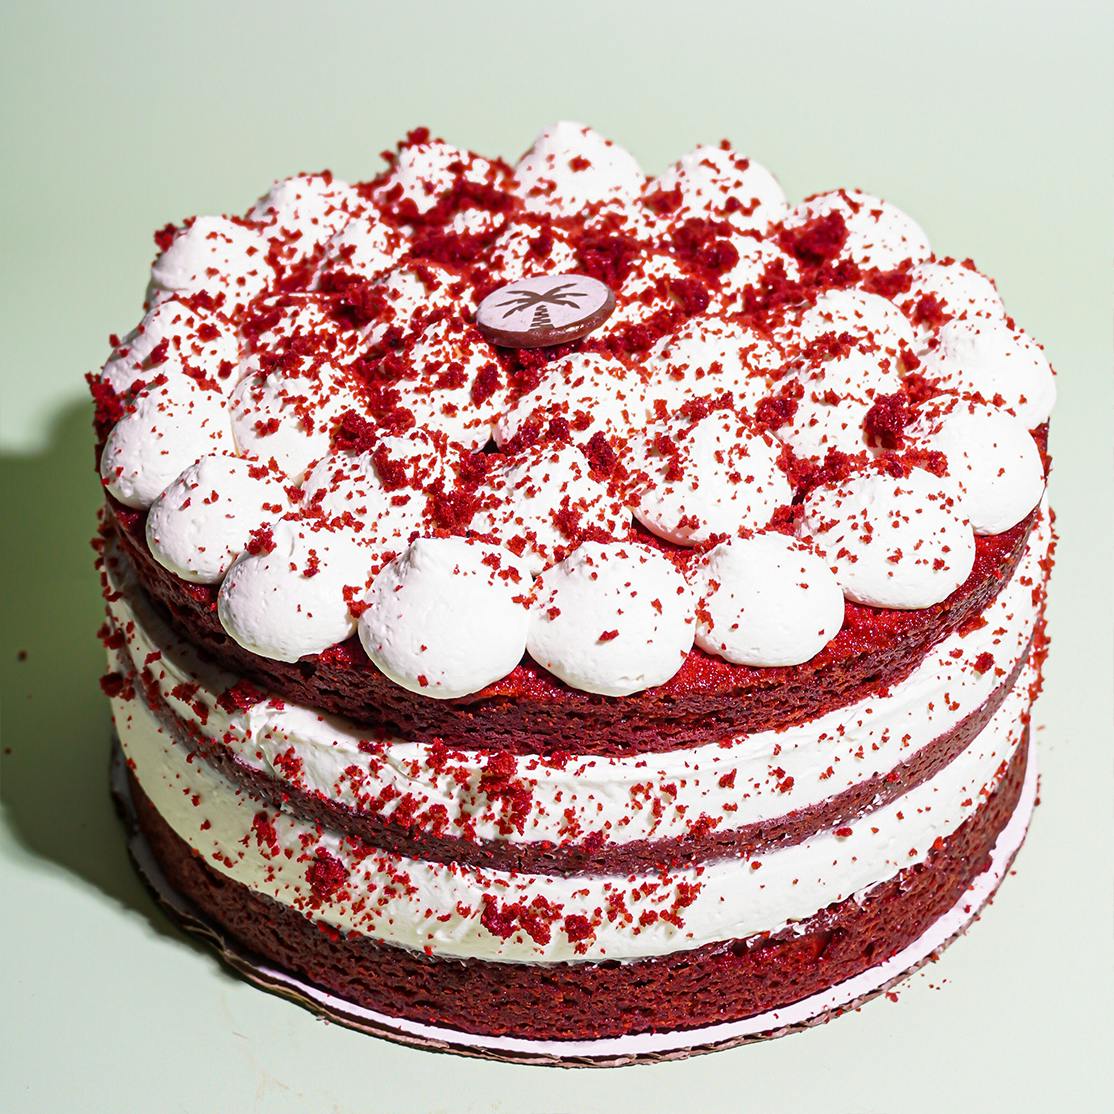 https://goldbelly.imgix.net/uploads/showcase_media_asset/image/193266/Oasis_Cafe-Red-Velvet-Cake-3.jpg?ixlib=rails-3.0.2